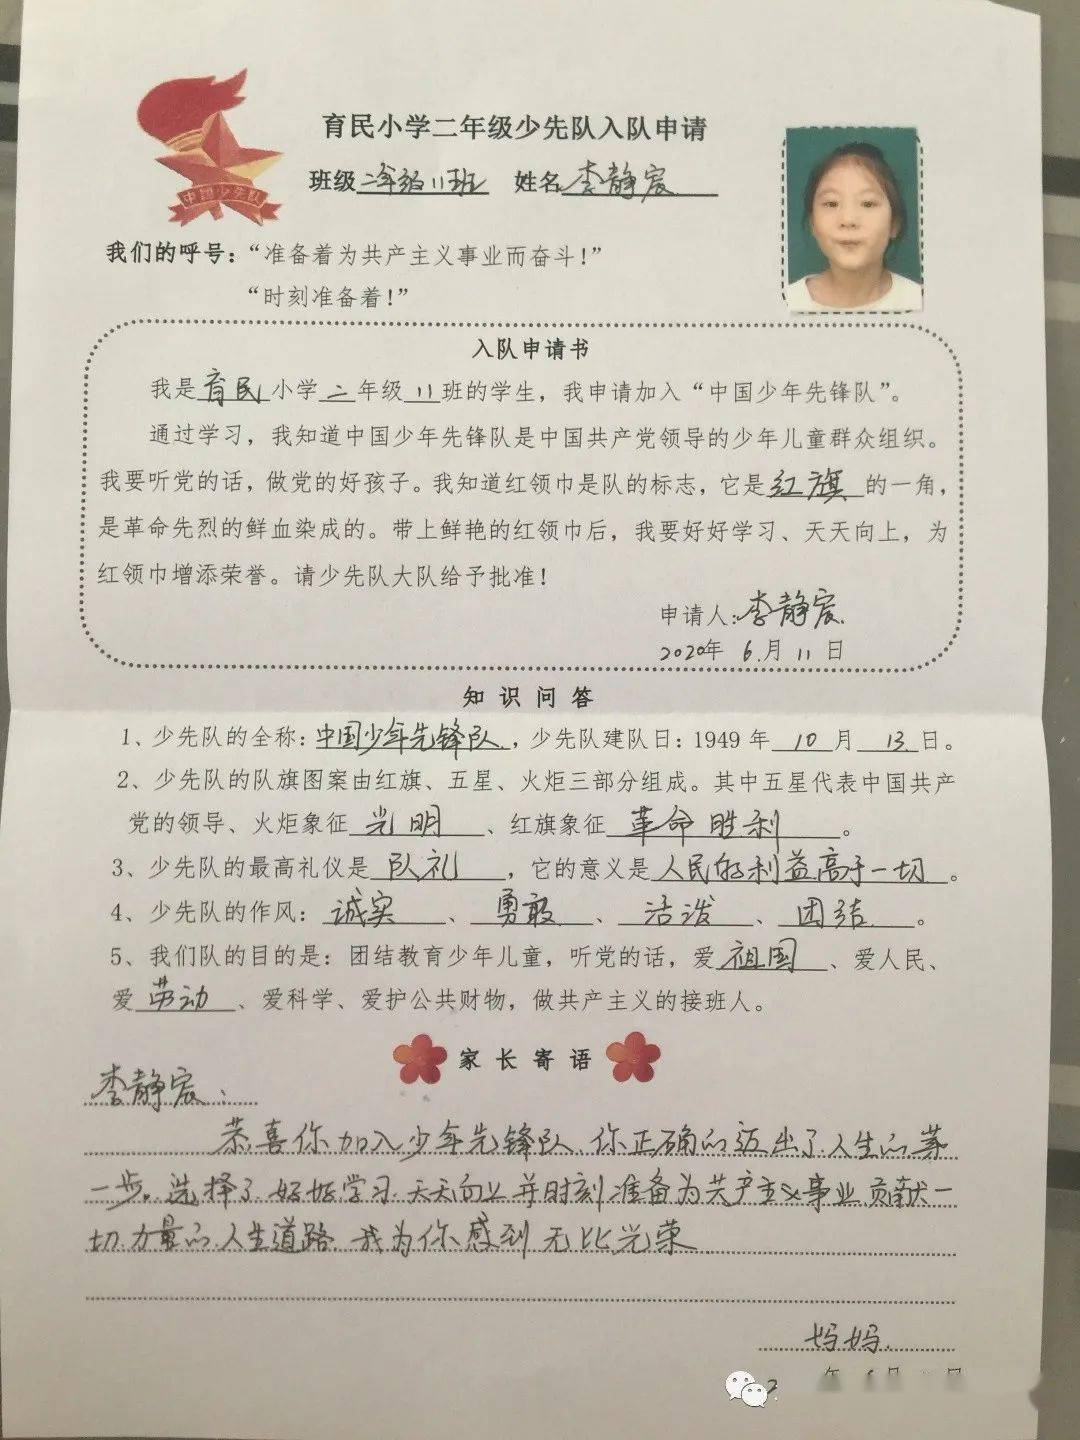 他们满怀期待地写下了自己的《入队申请书》,志愿加入"中国少年先锋队